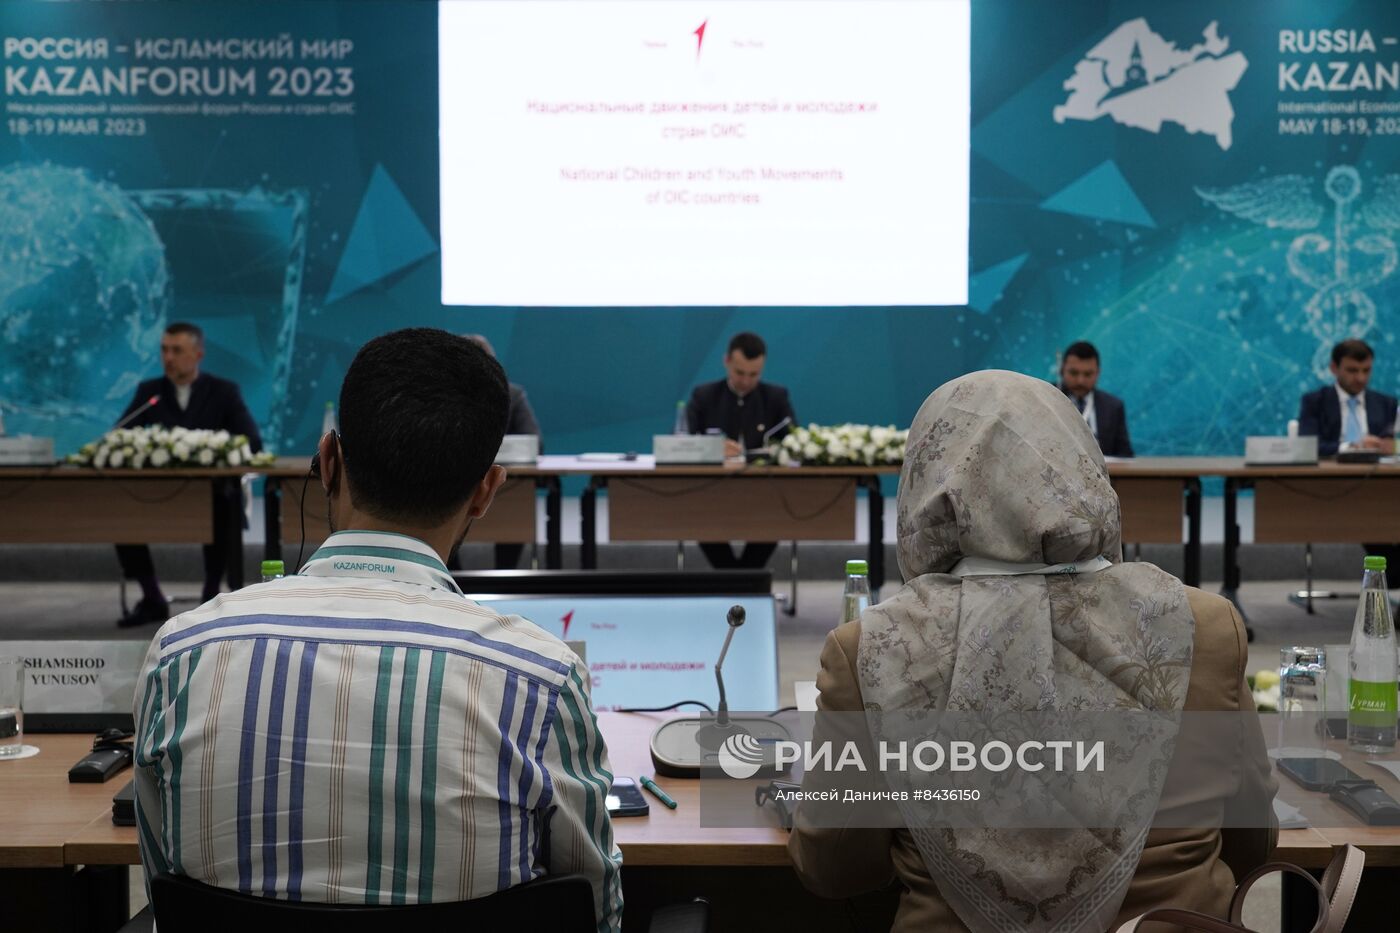 KAZANFORUM 2023. Сессия "Движение детей и молодежи в России и странах ОИС как фактор устойчивого развития территорий"